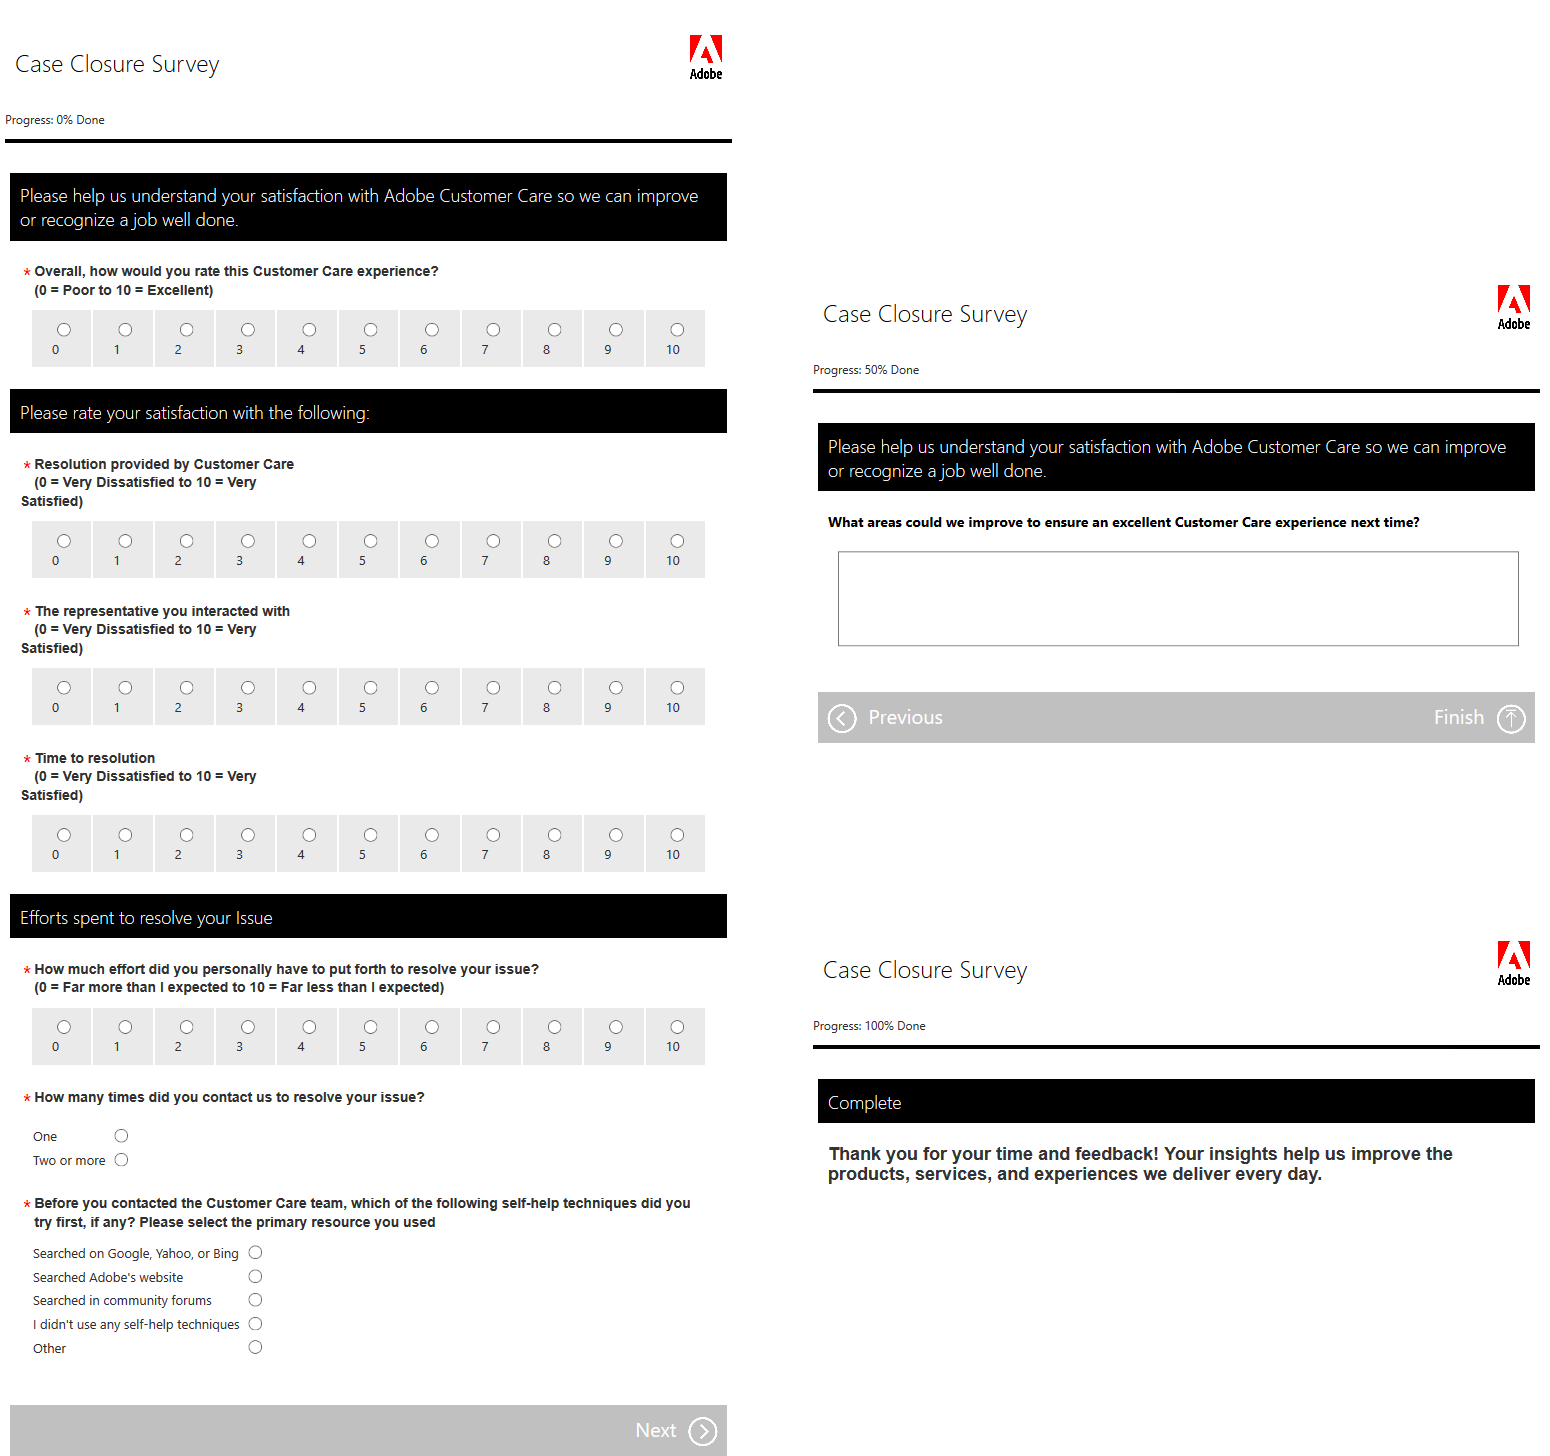 Adobe Müşteri Hizmetleri'nin Vaka Kapanış Anketi